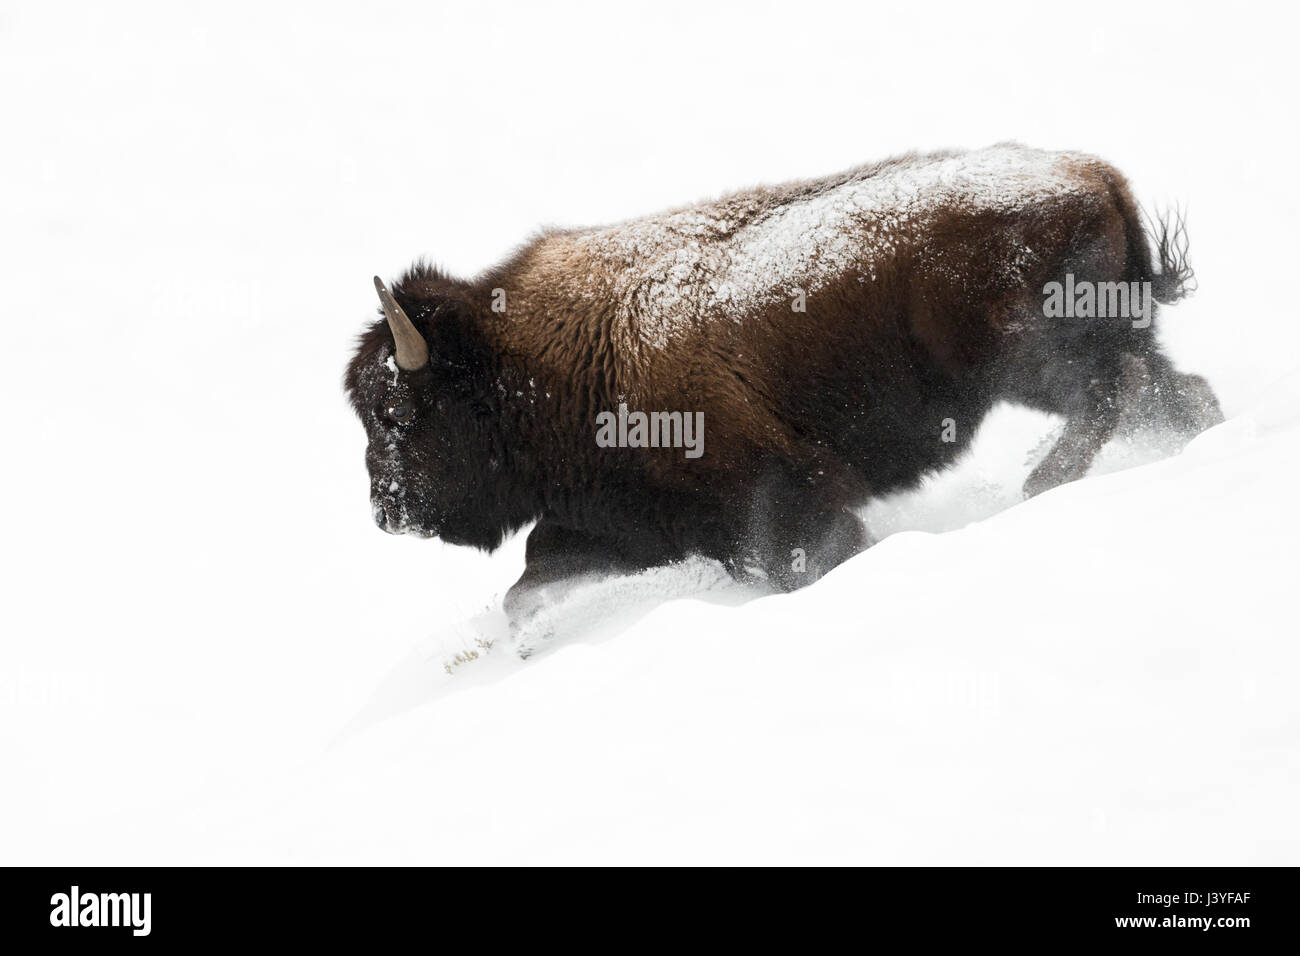 Bisonti americani ( Bison bison ), Bull in inverno la pelliccia, corsa in discesa attraverso la profonda polvere soffice neve, potente, impressionante, Yellowstone NP, STATI UNITI D'AMERICA. Foto Stock